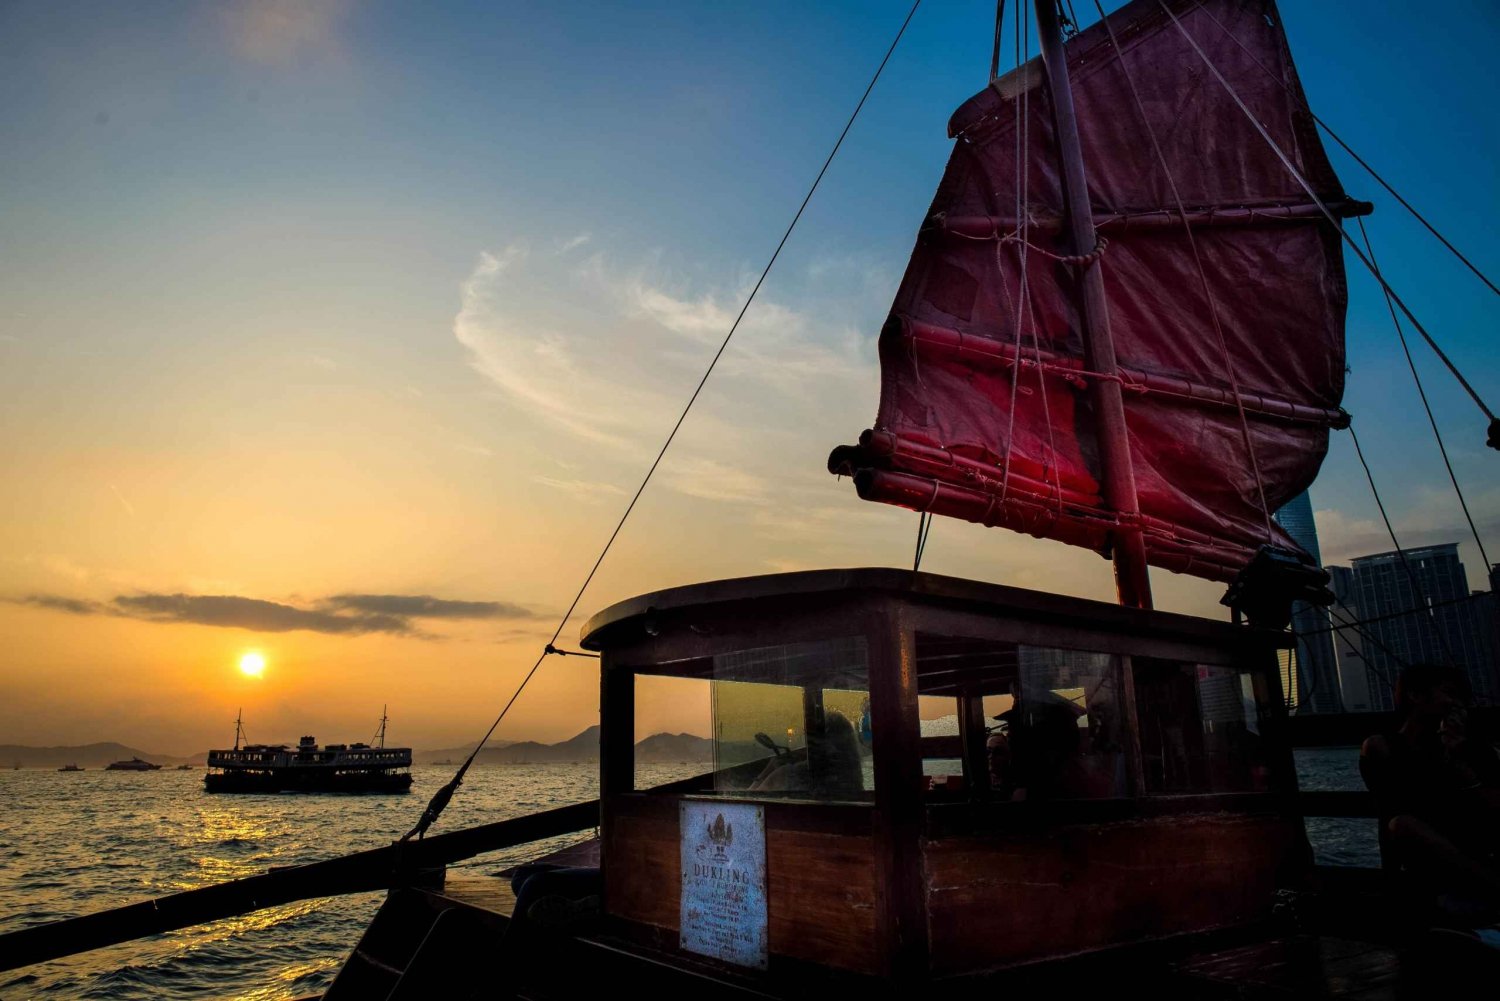 Hong Kong: Victoria Harbour Antique Boat Tour